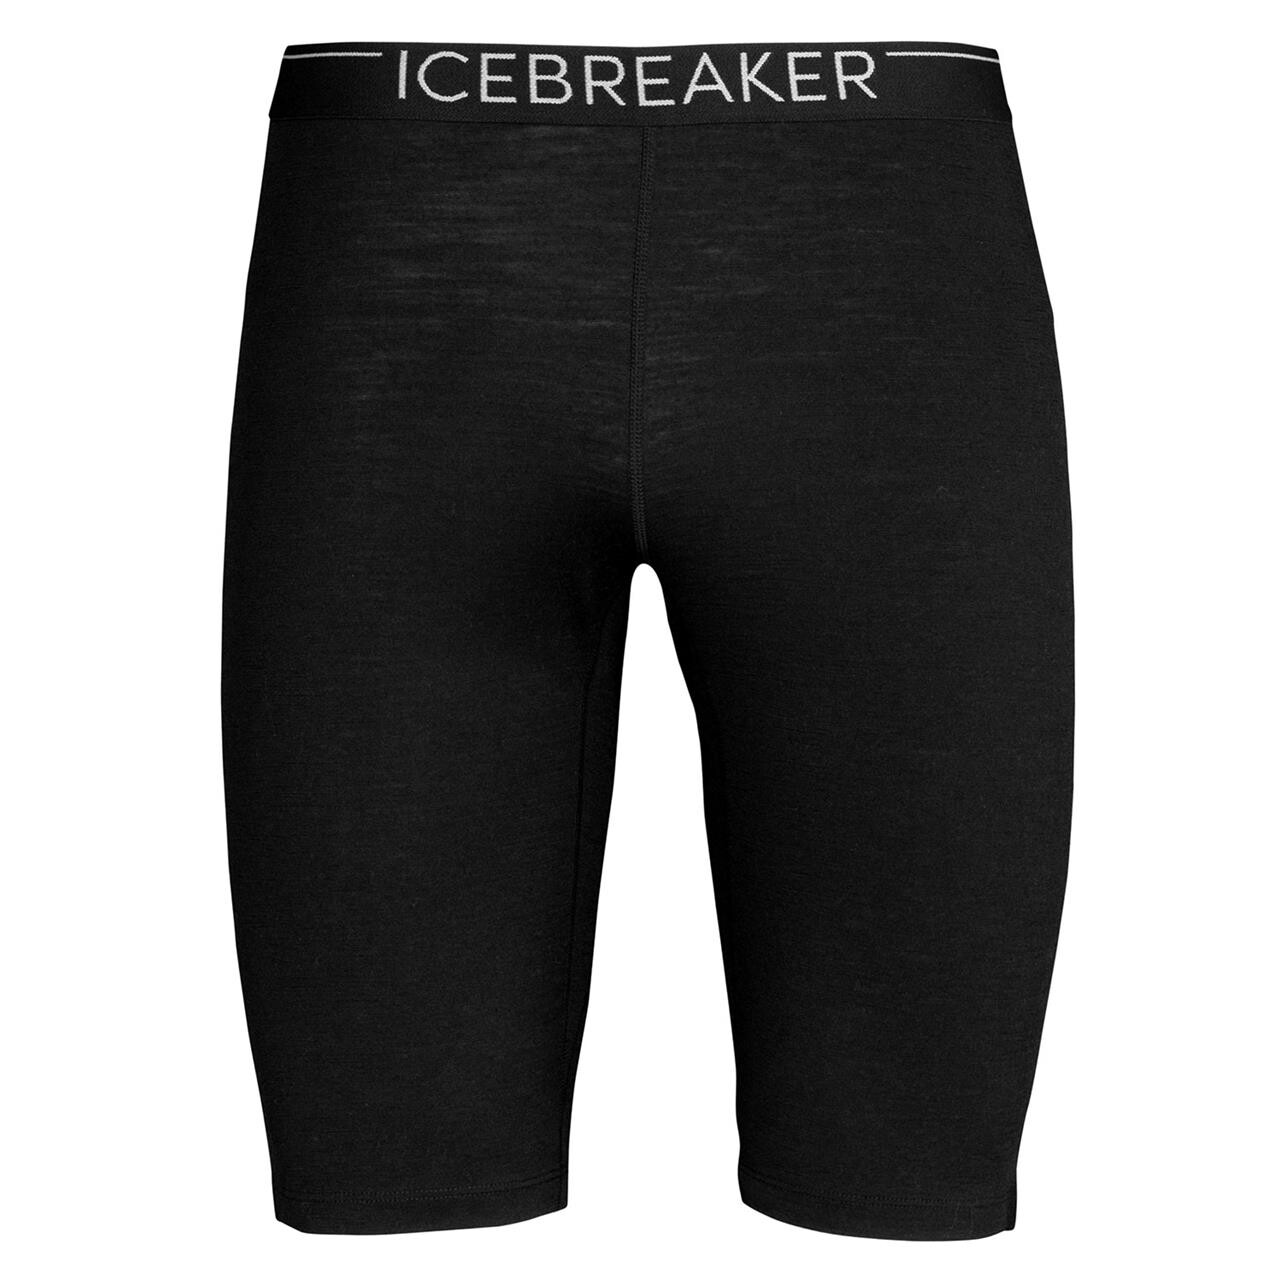 Bedste Icebreaker Shorts i 2023